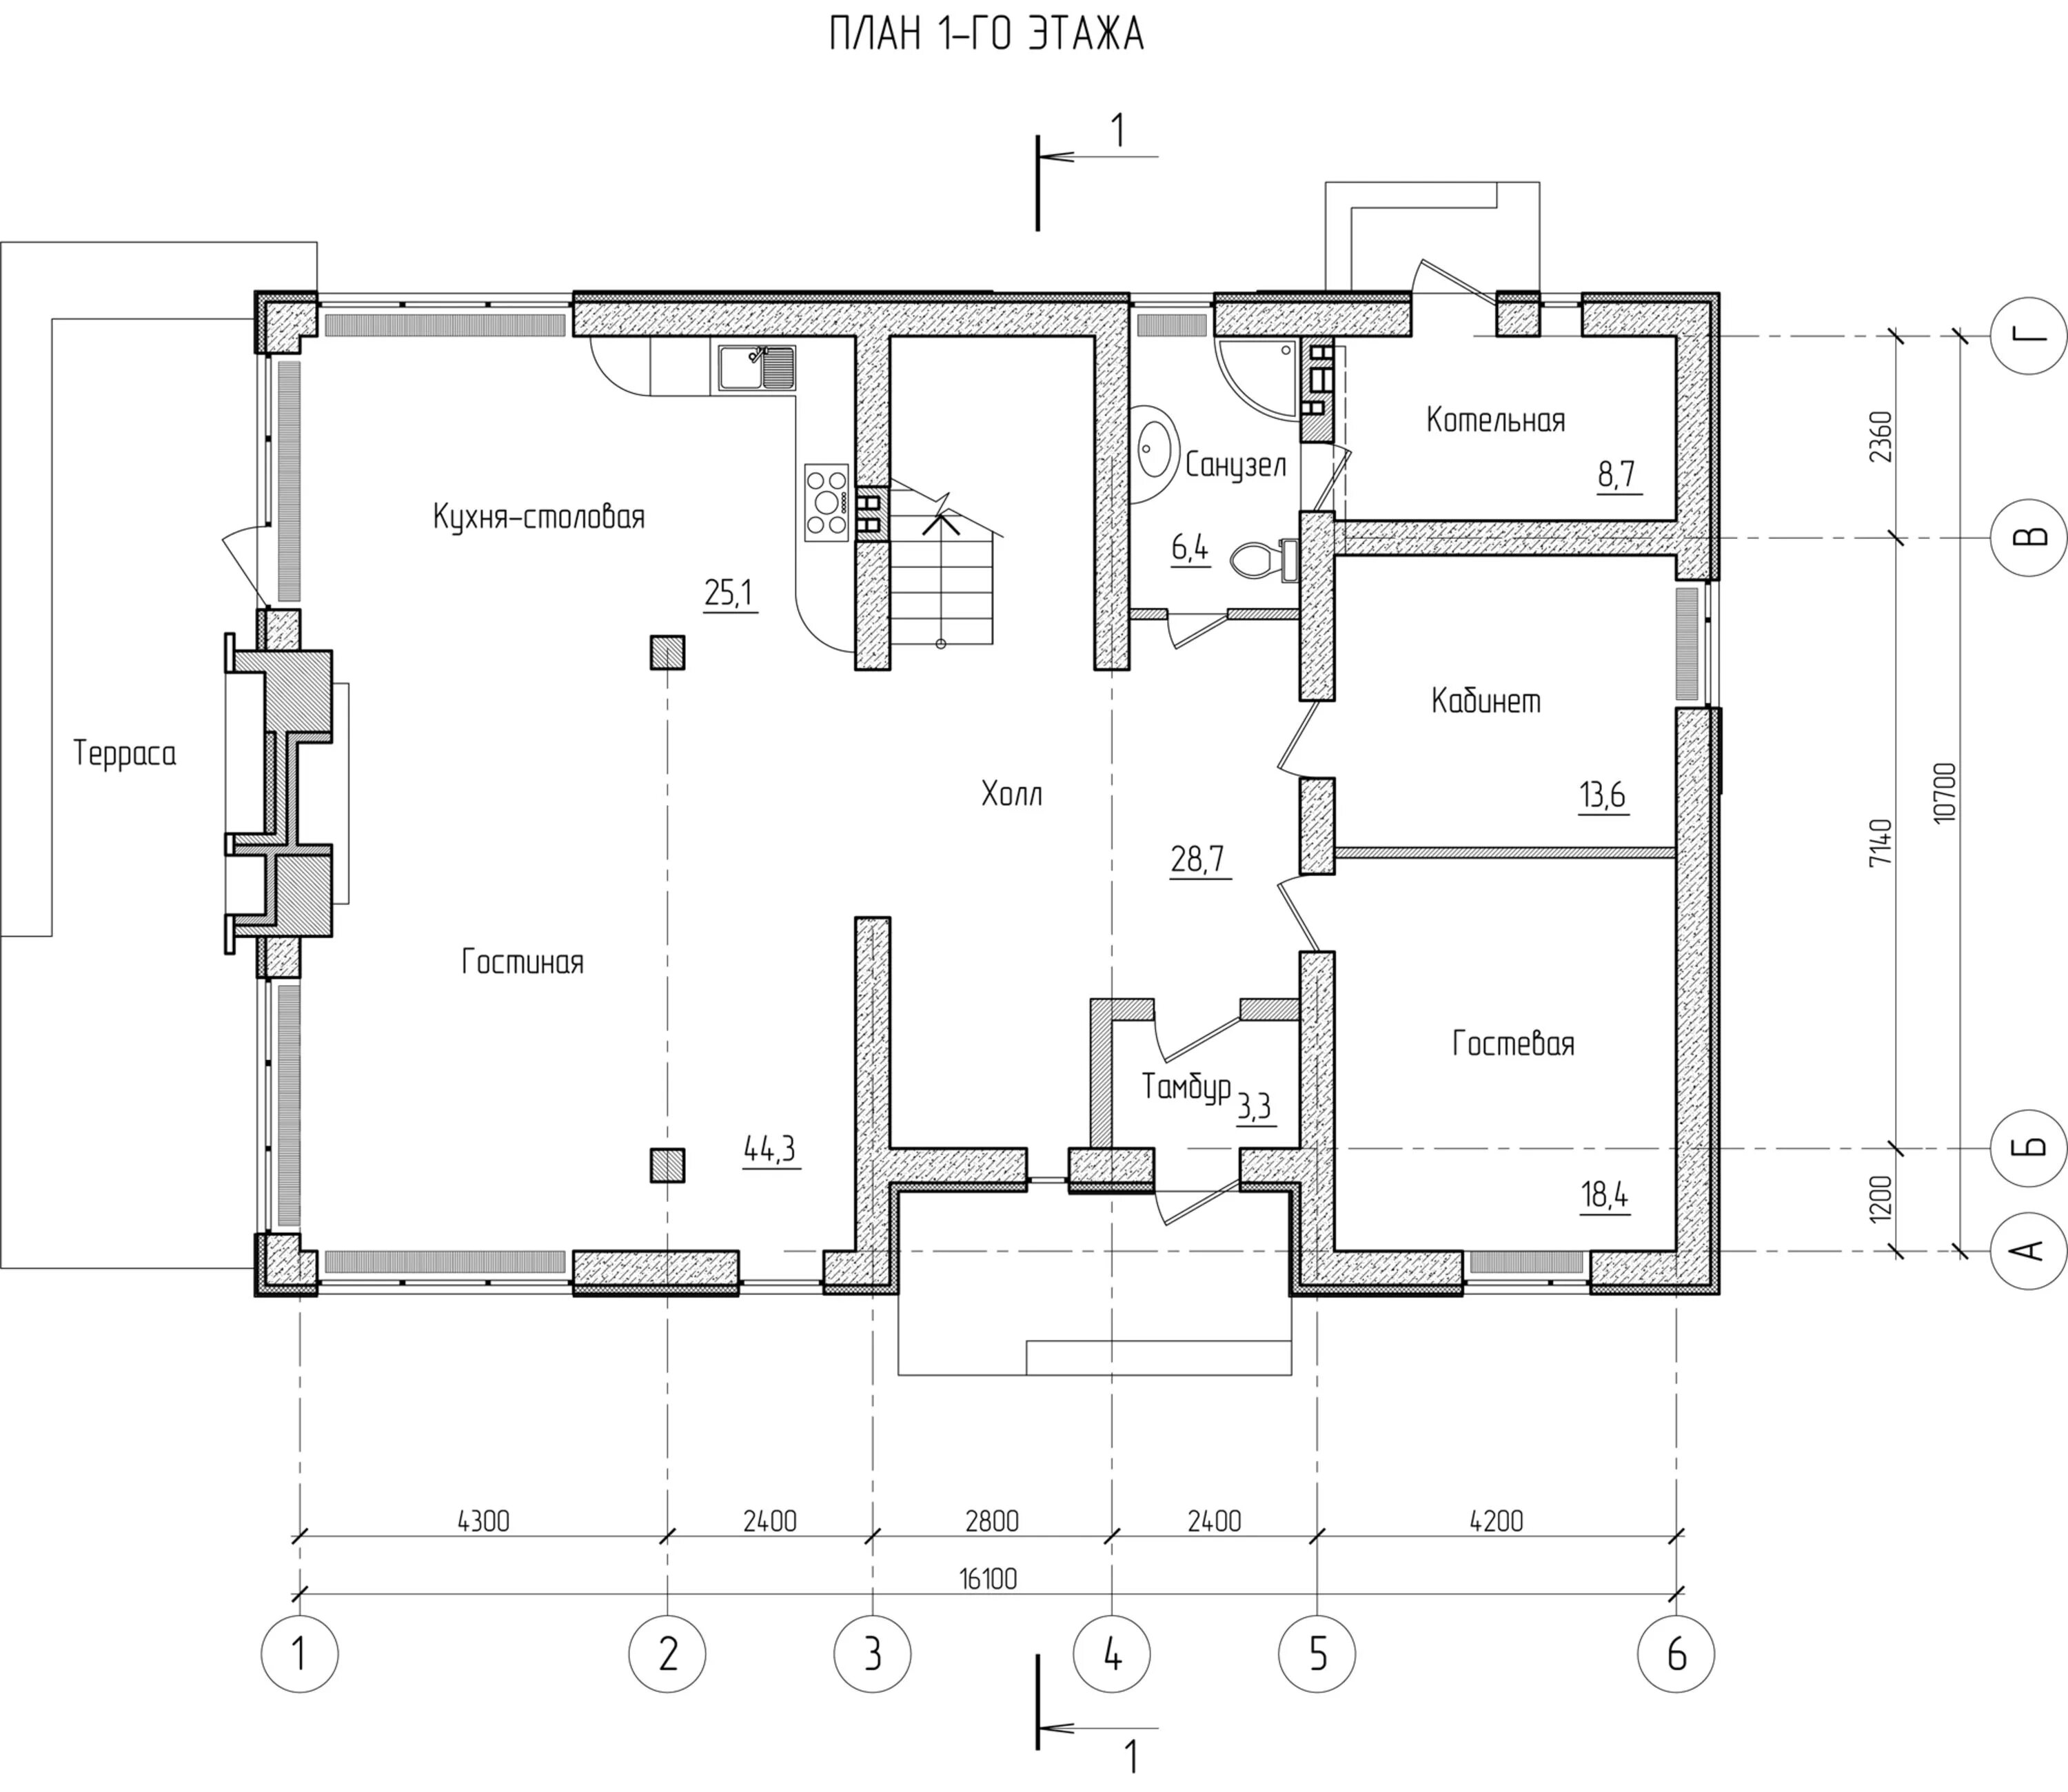 Размеры первого этажа. План жилого дома. План первого этажа. План этажа жилого дома. План первого этажа жилого дома.